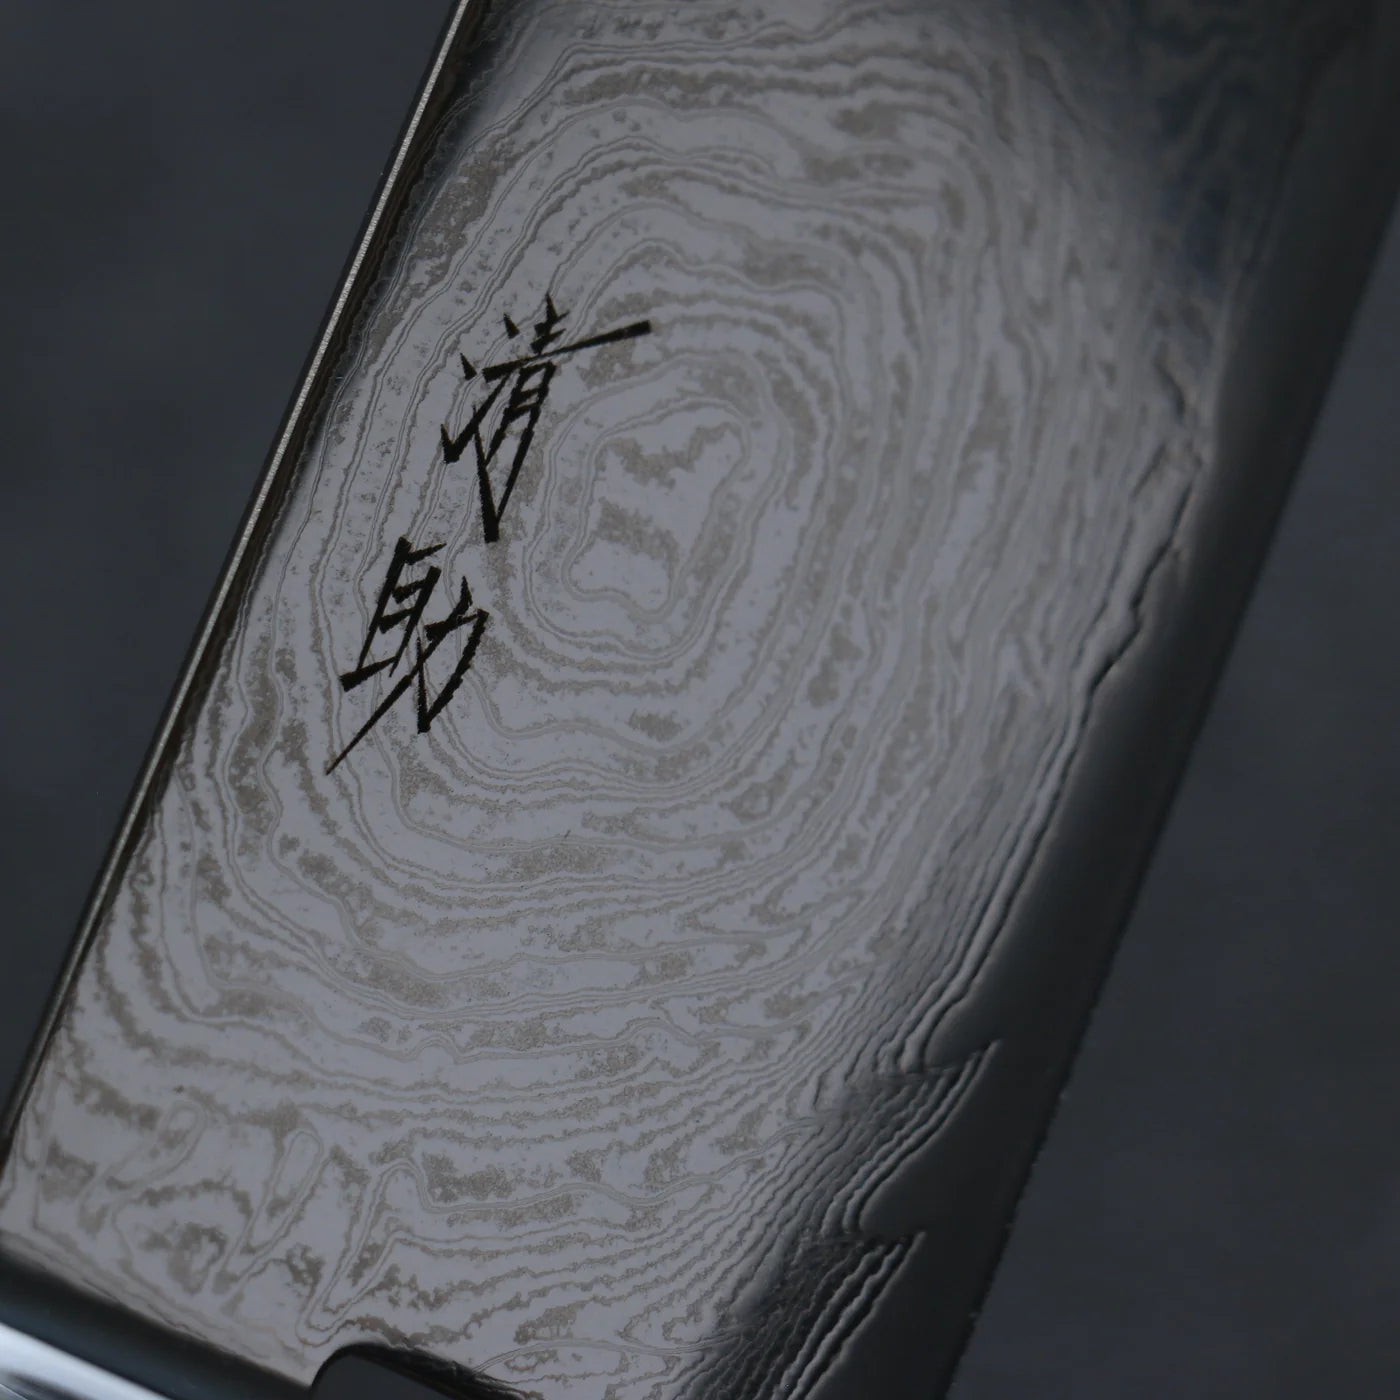 Seisuke Marke Wave AUS10 Spiegelbeschichteter Damaststahl Spezialisiertes Gemüsemesser Nakiri Japanisches Messer 165 mm schwarzer Pakka-Holzgriff